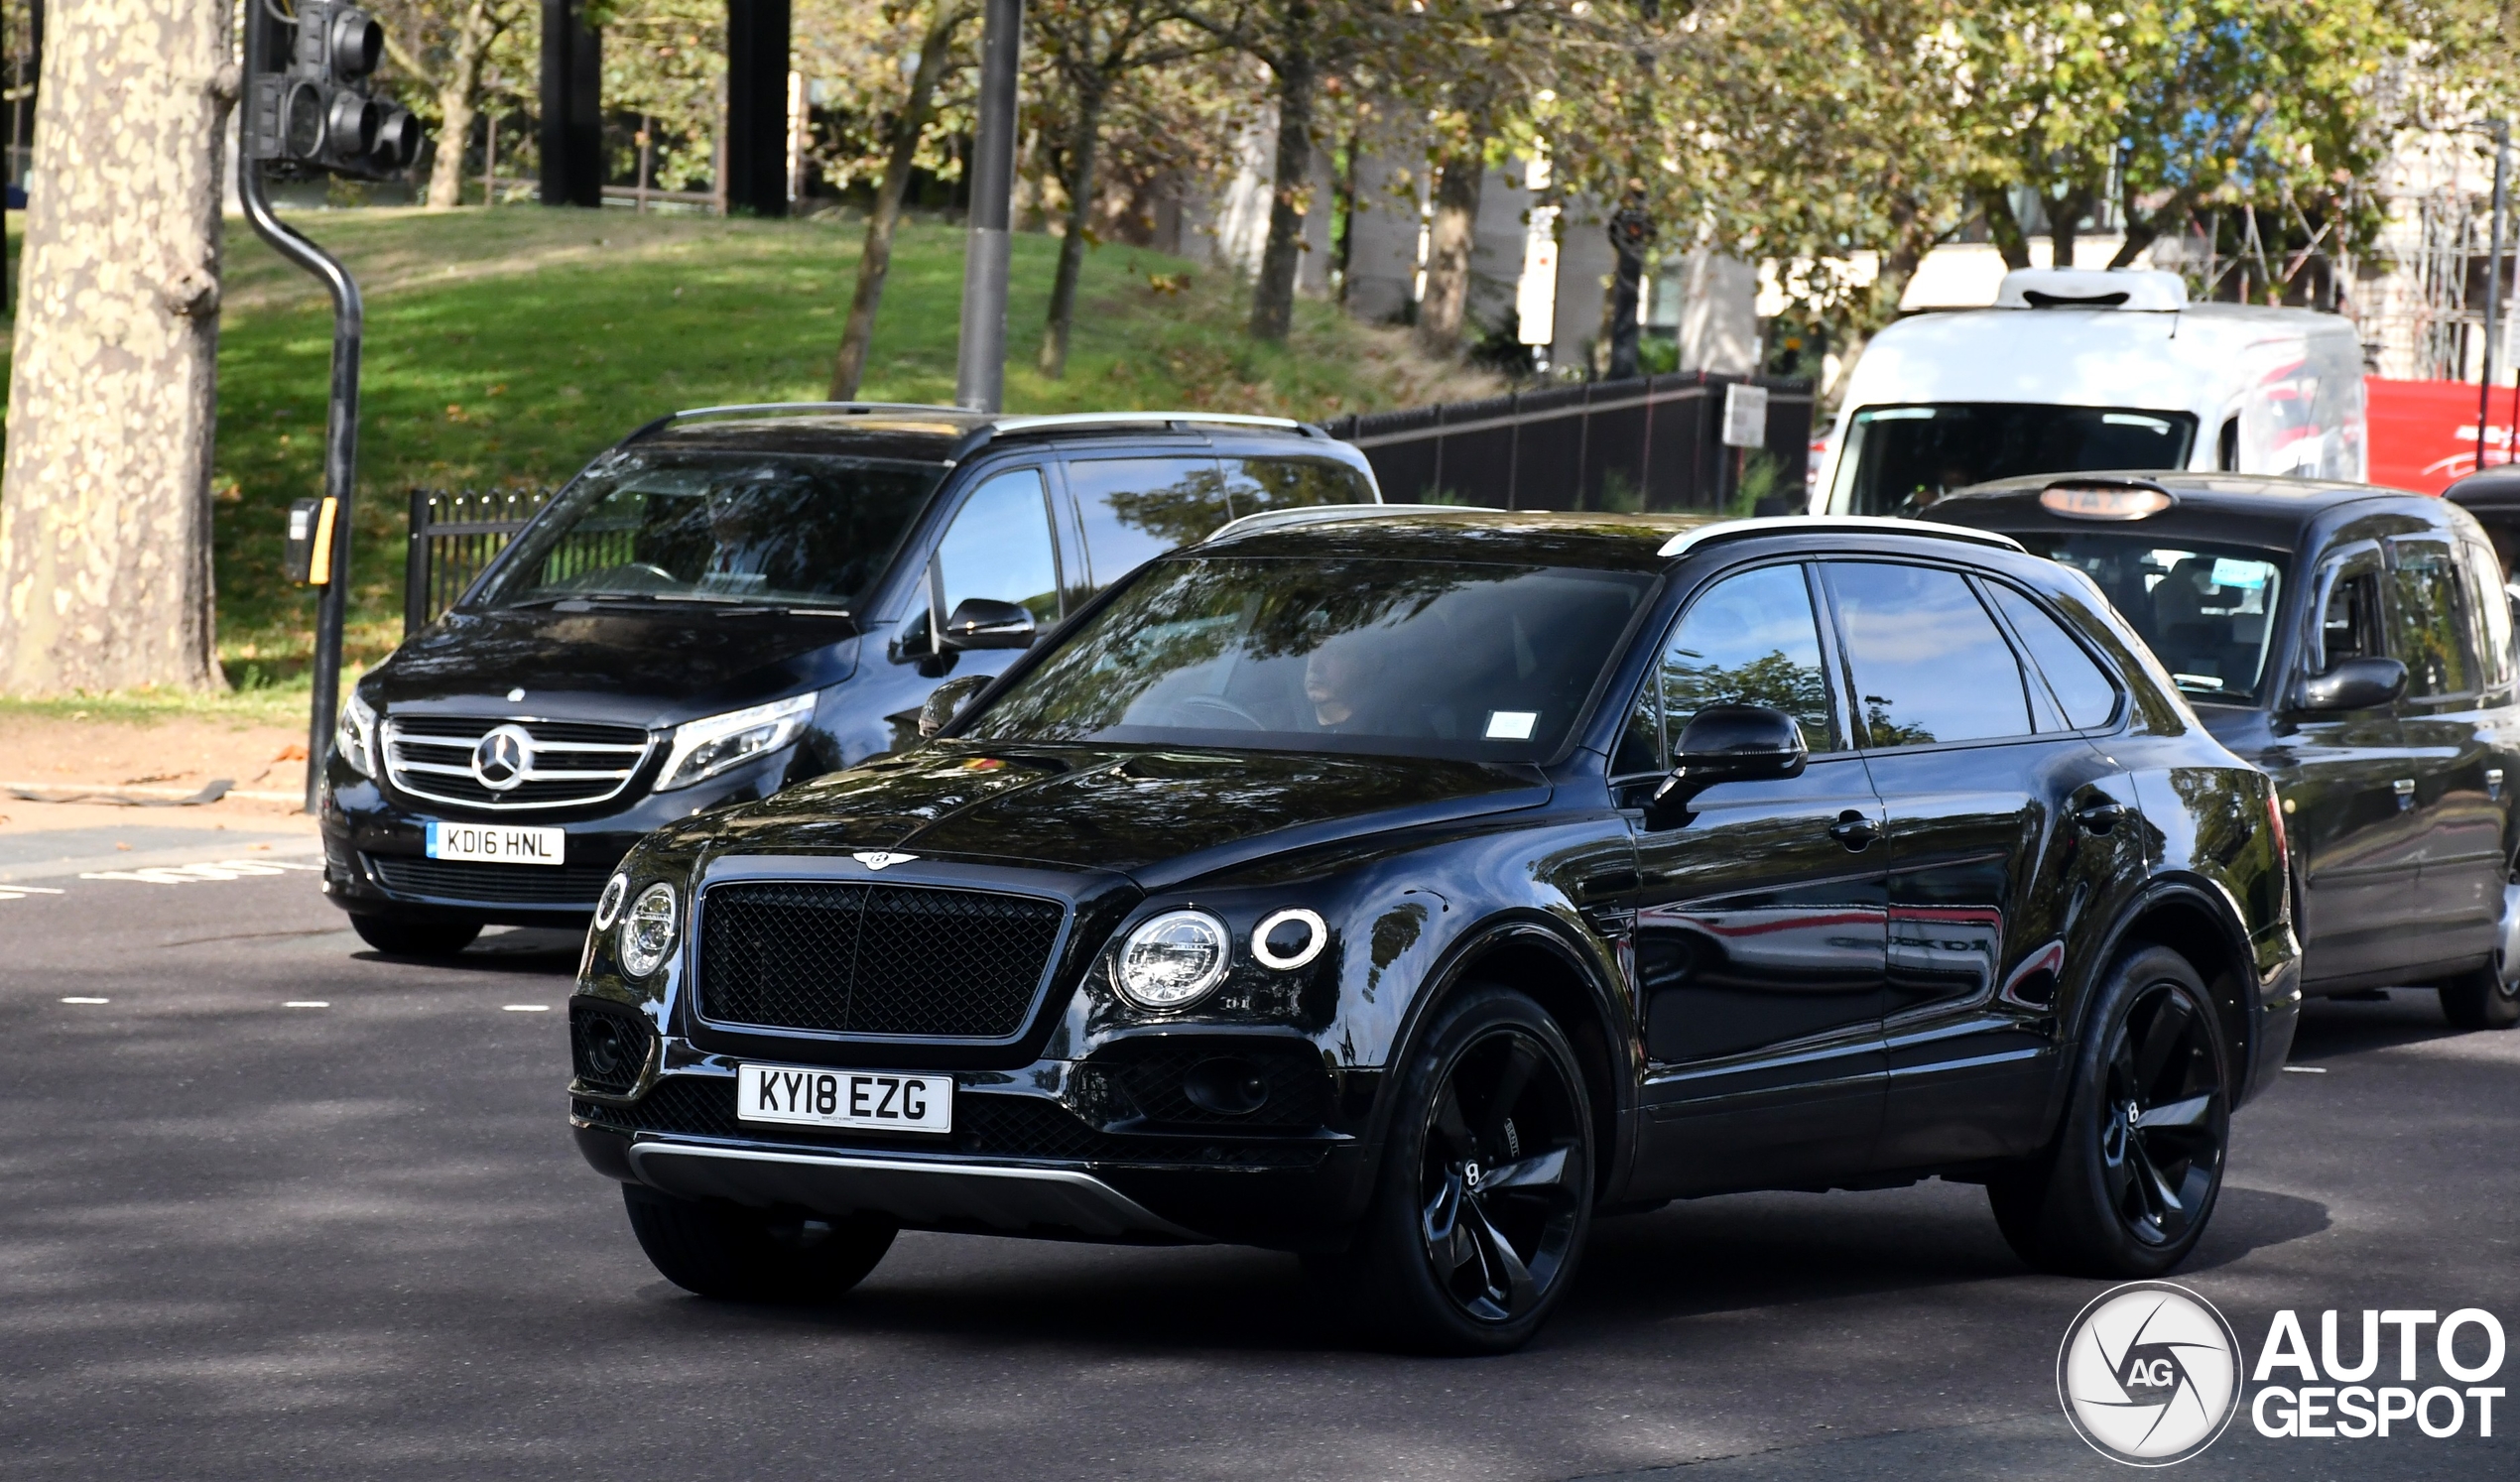 Bentley Bentayga Black Edition